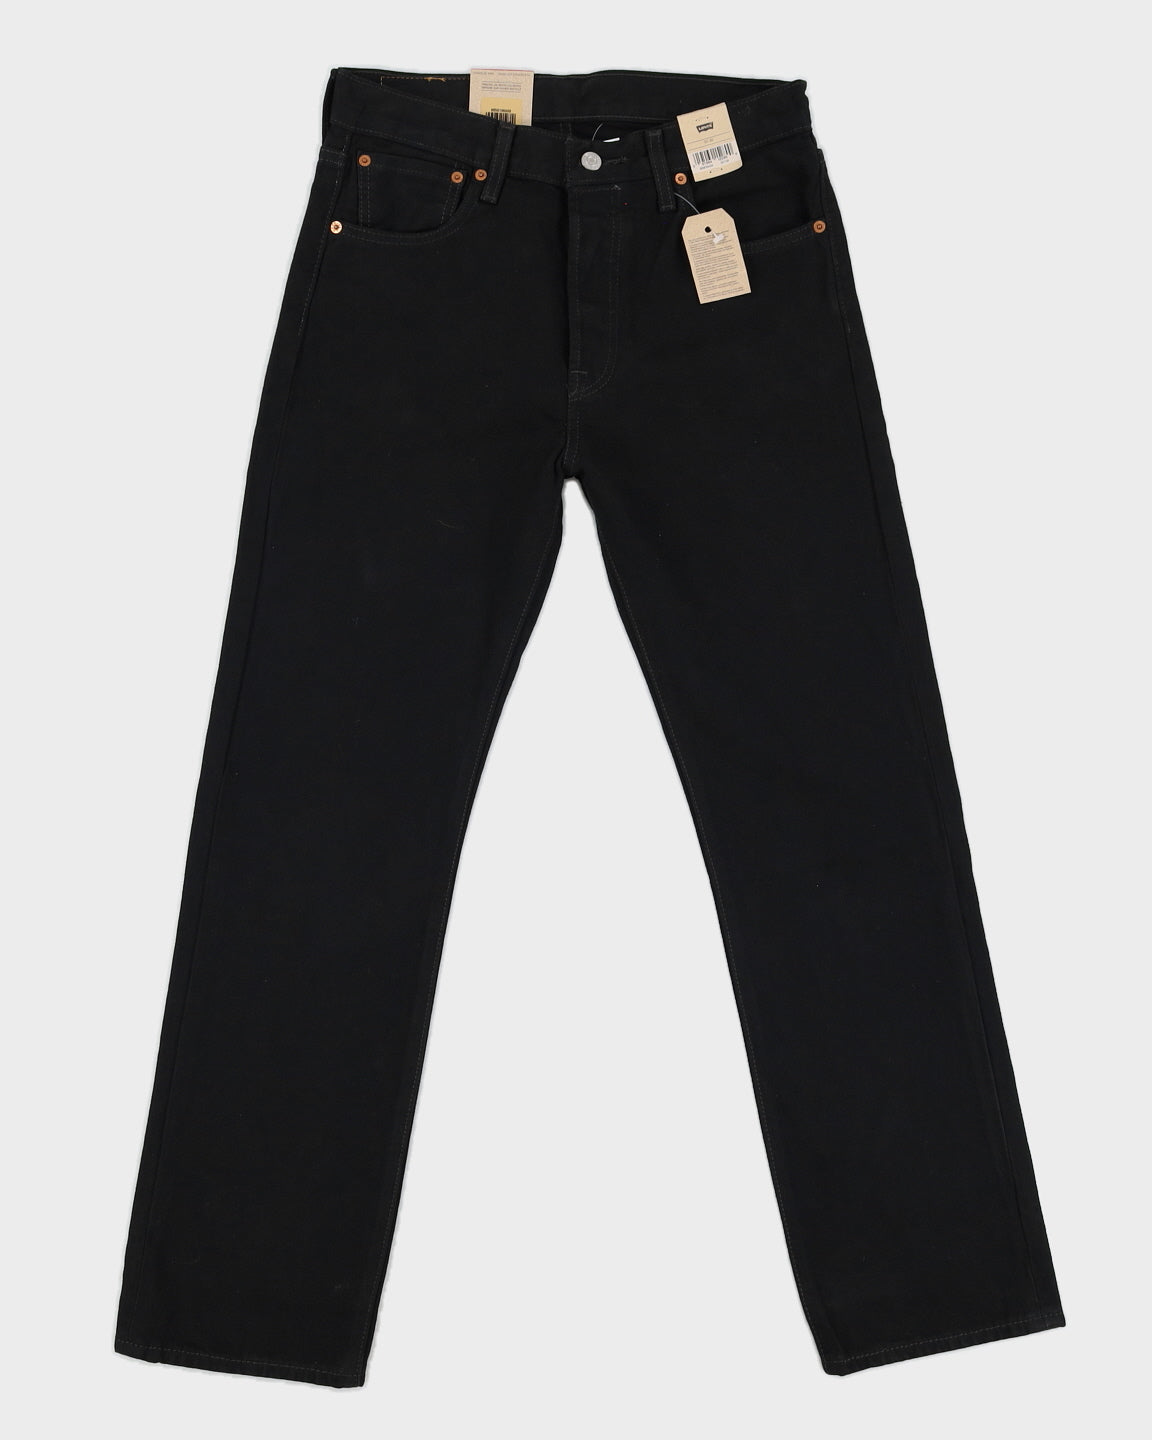 Levi's 501 Black Dark Washed Jeans - W30 L30